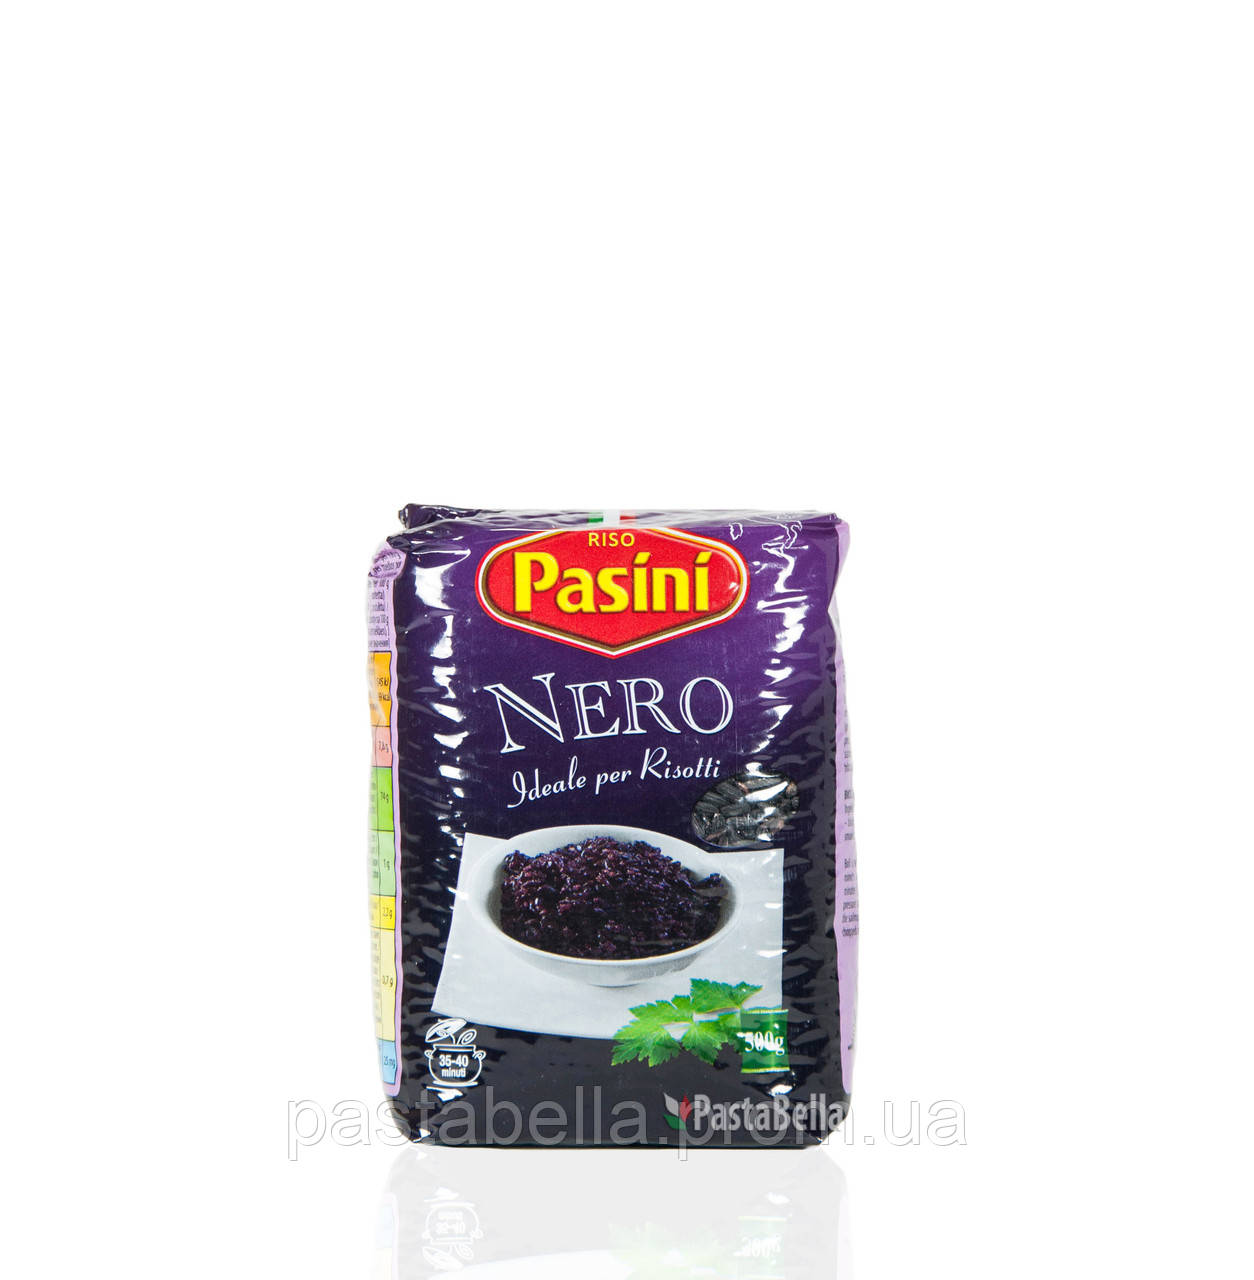 Чорний (дикий) рис для різотто - Nero per risotti Pasini 500g Pastabella